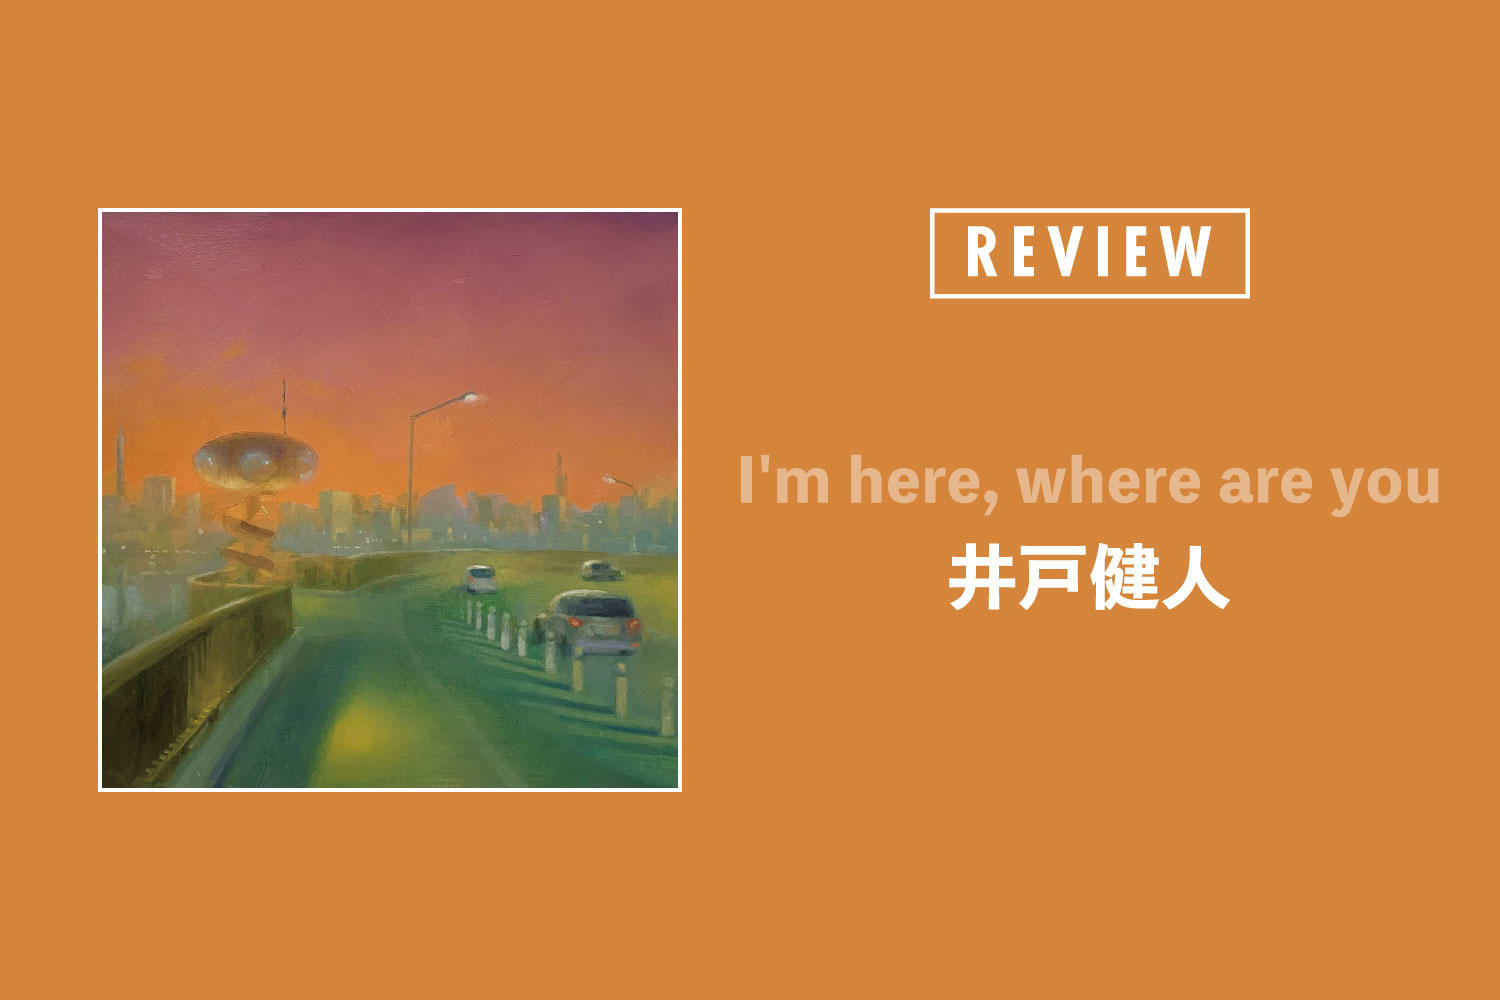 井戸健人「I'm here, where are you」──心象風景と半径数メートルの世界を丁寧に編み上げた、京都の箱庭ポップス